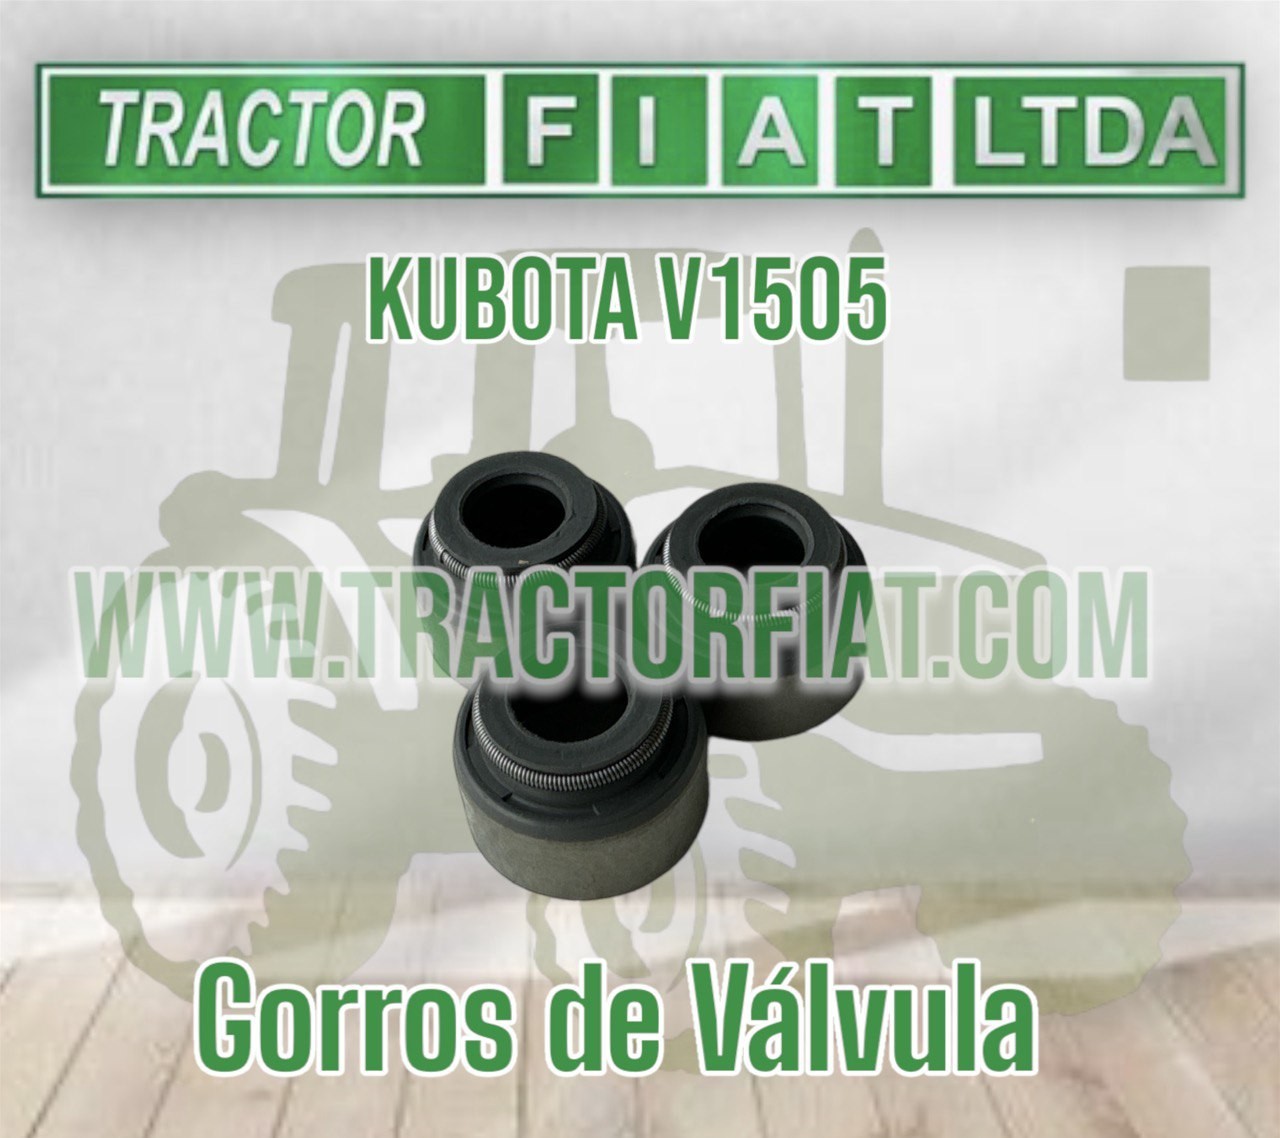 GORROS DE VALVULA- MOTOR KUBOTA V1505